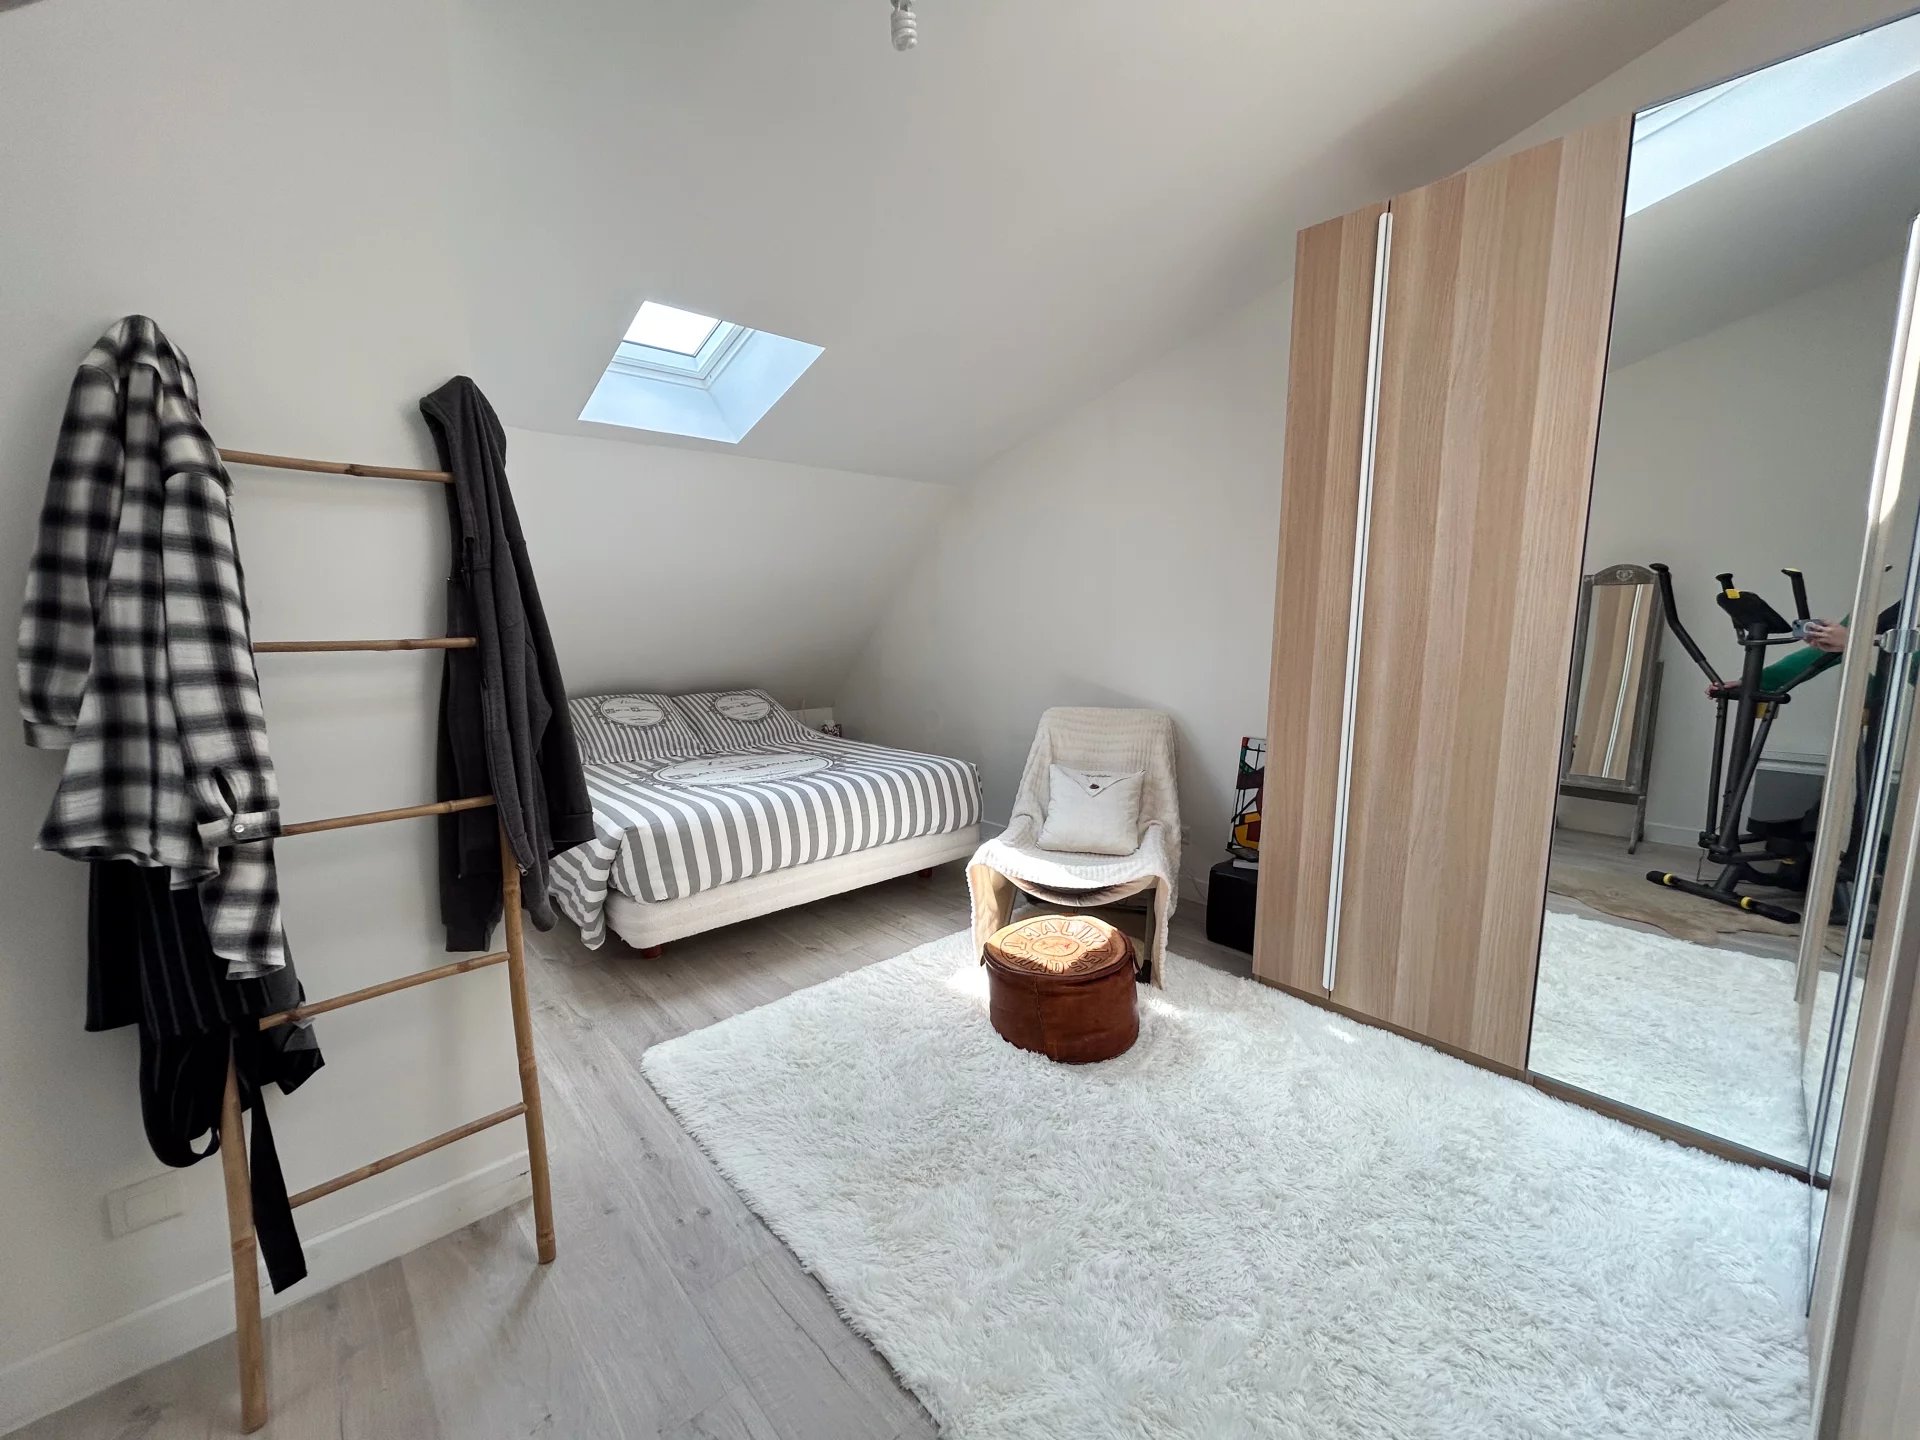 Sale Apartment - Nantes Breil - Contrie